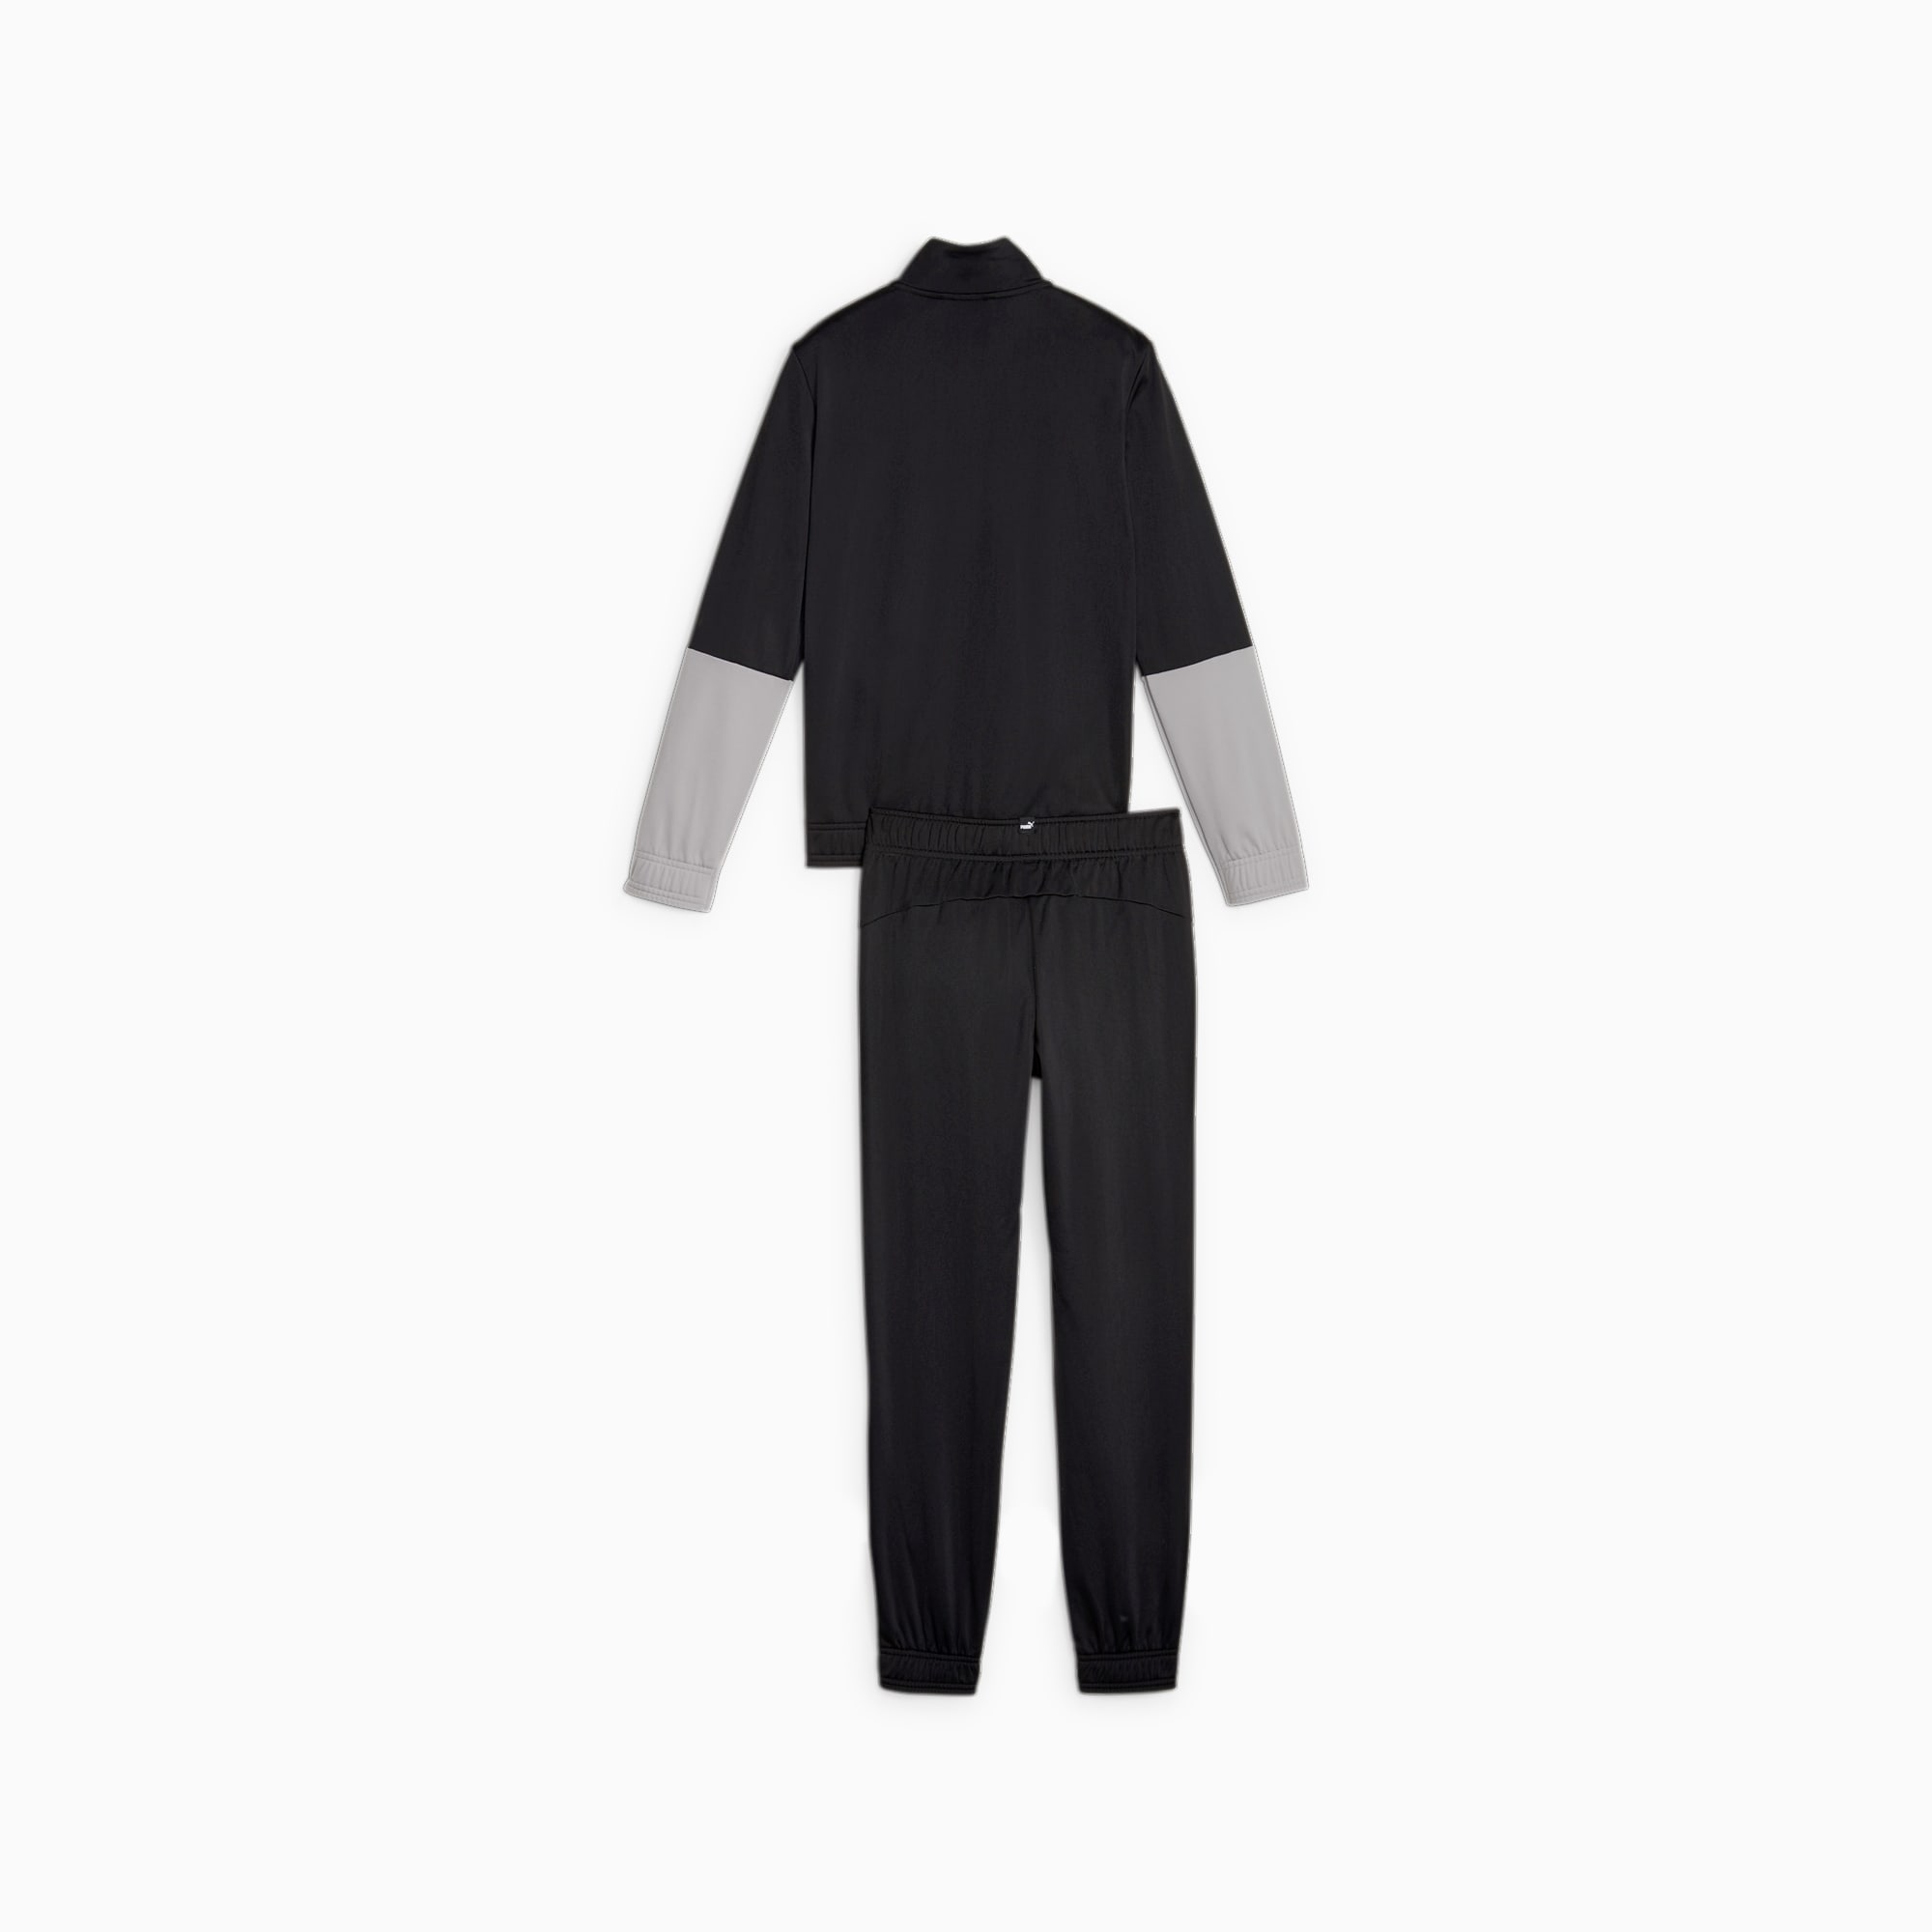 PUMA Colourblock Poly Suit Teenager Für Kinder, Schwarz, Größe: 164, Kleidung